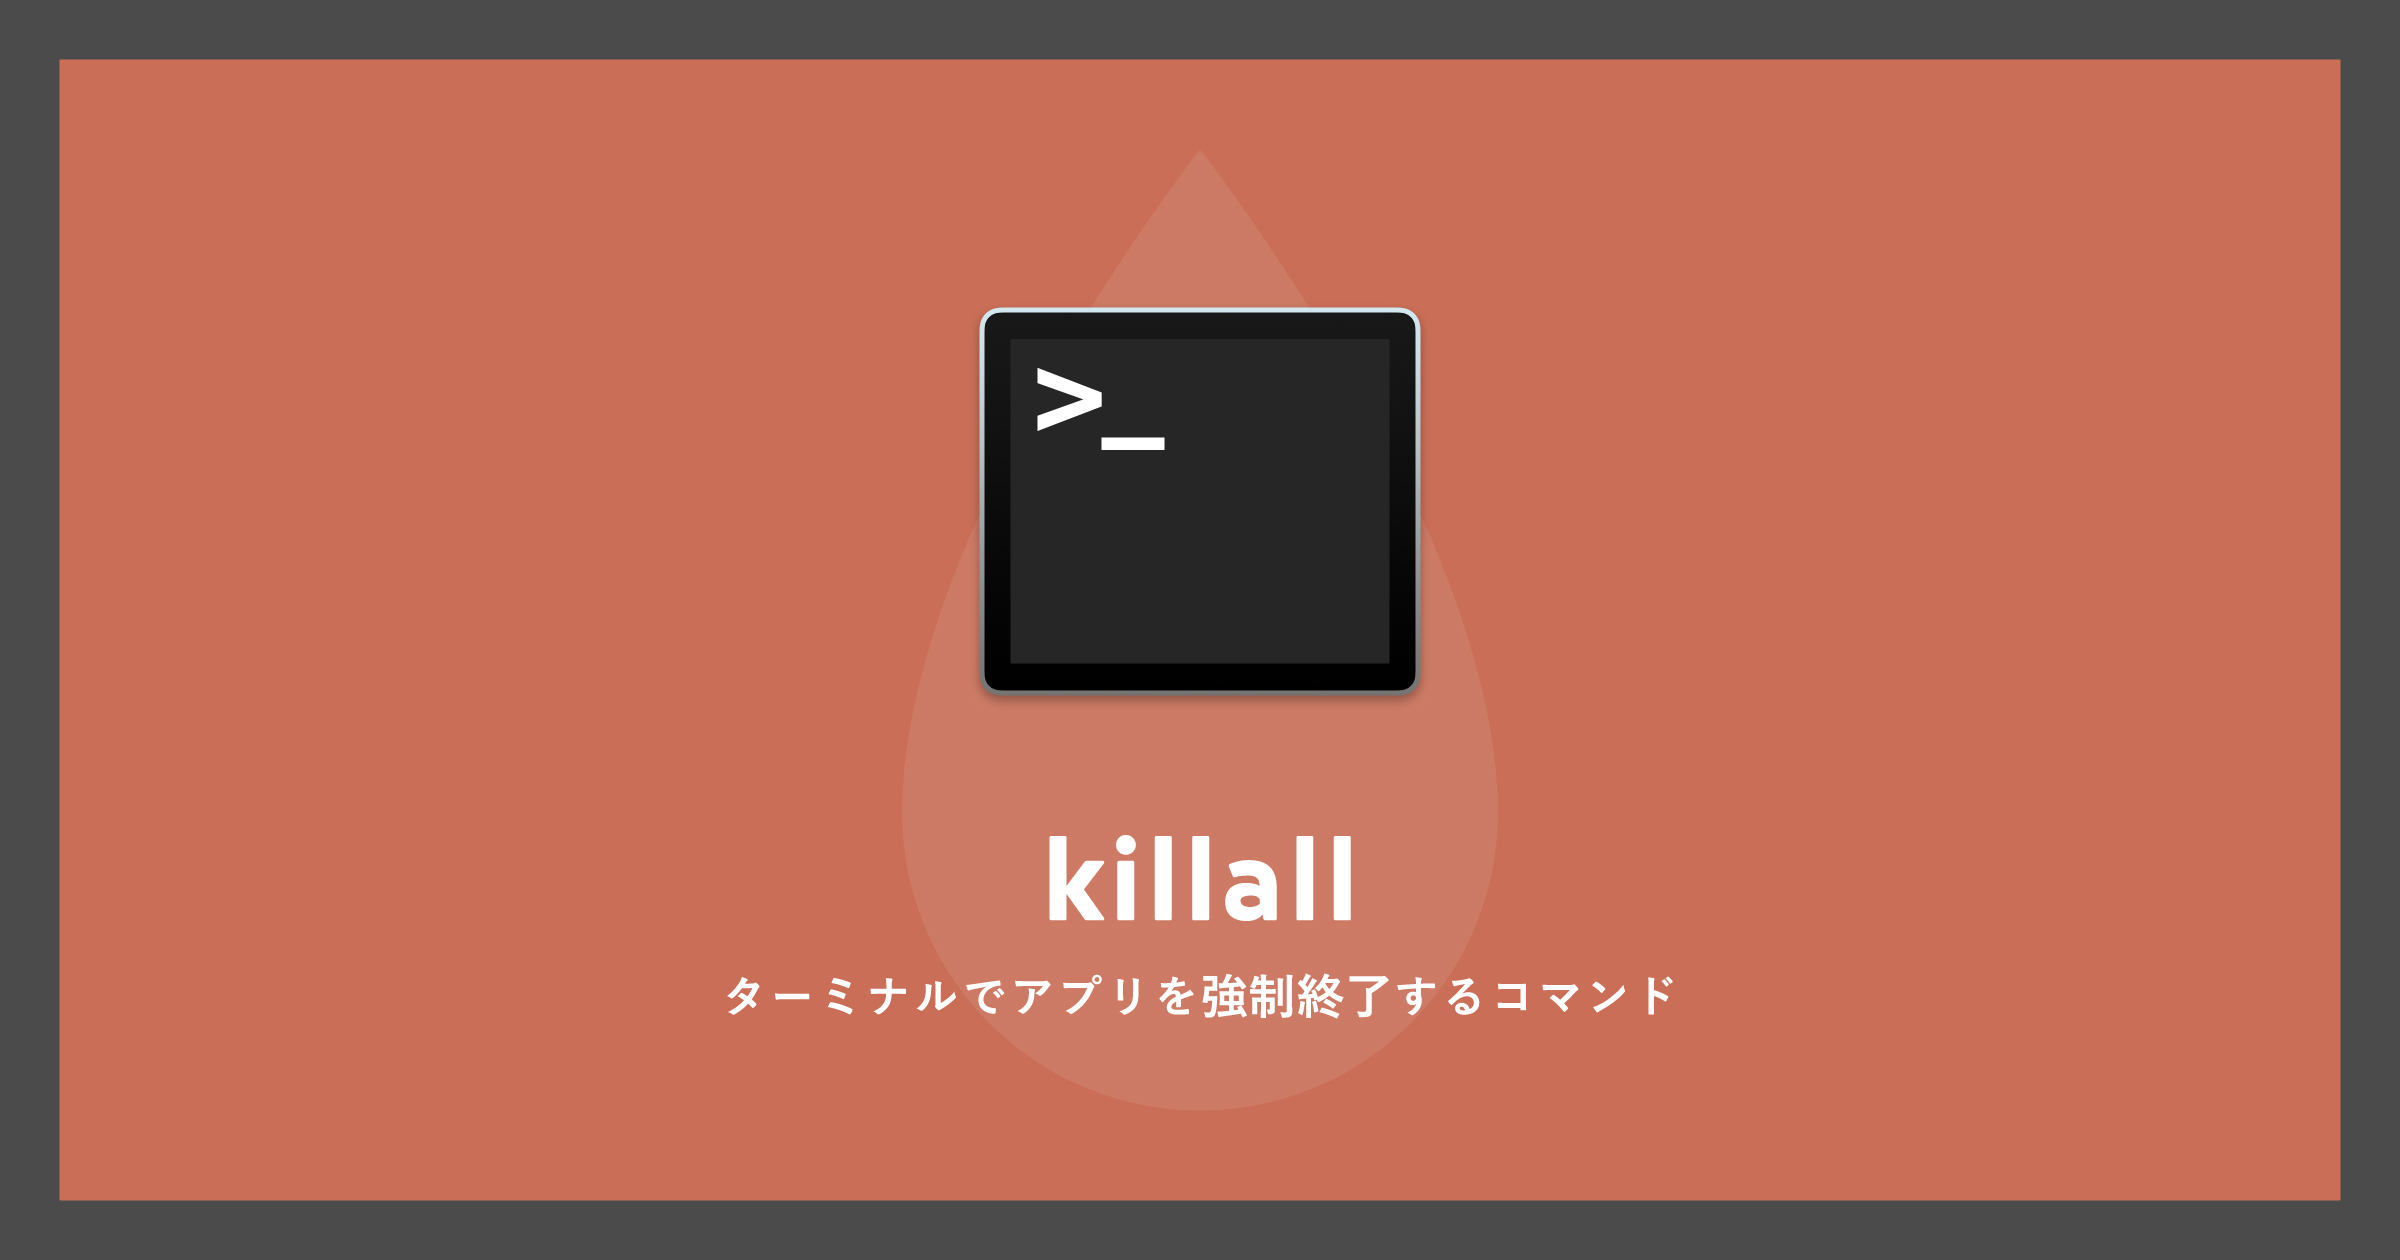 「[Mac]ターミナルでアプリを強制終了するコマンドkillall」のアイキャッチ画像